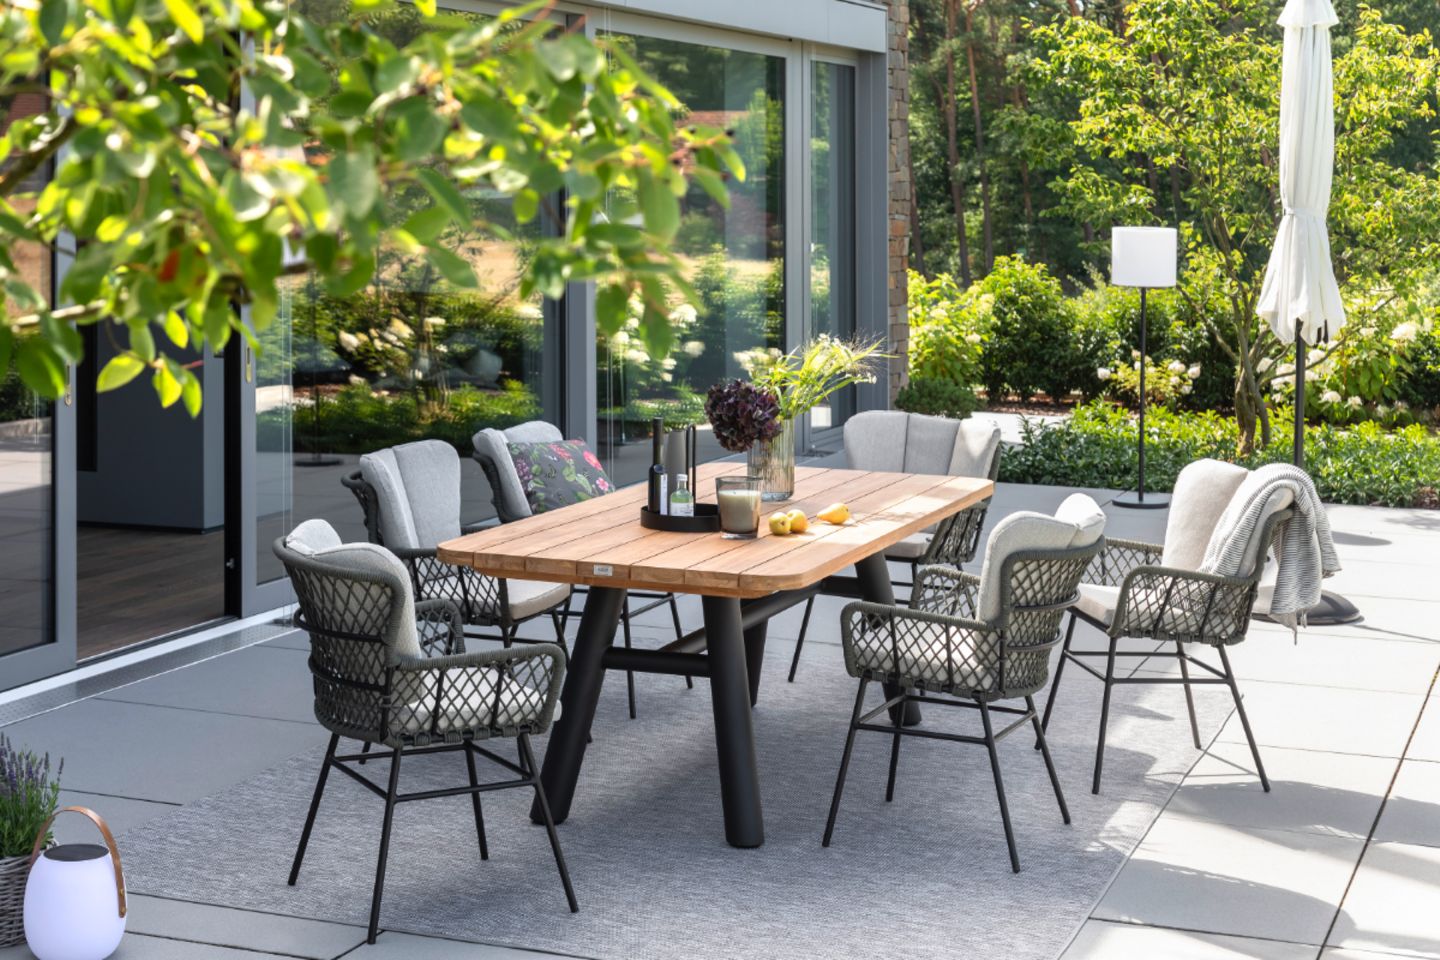 Gartenstühle aus dunklem Geflecht um einen Esstisch herum auf gefliester Terrasse